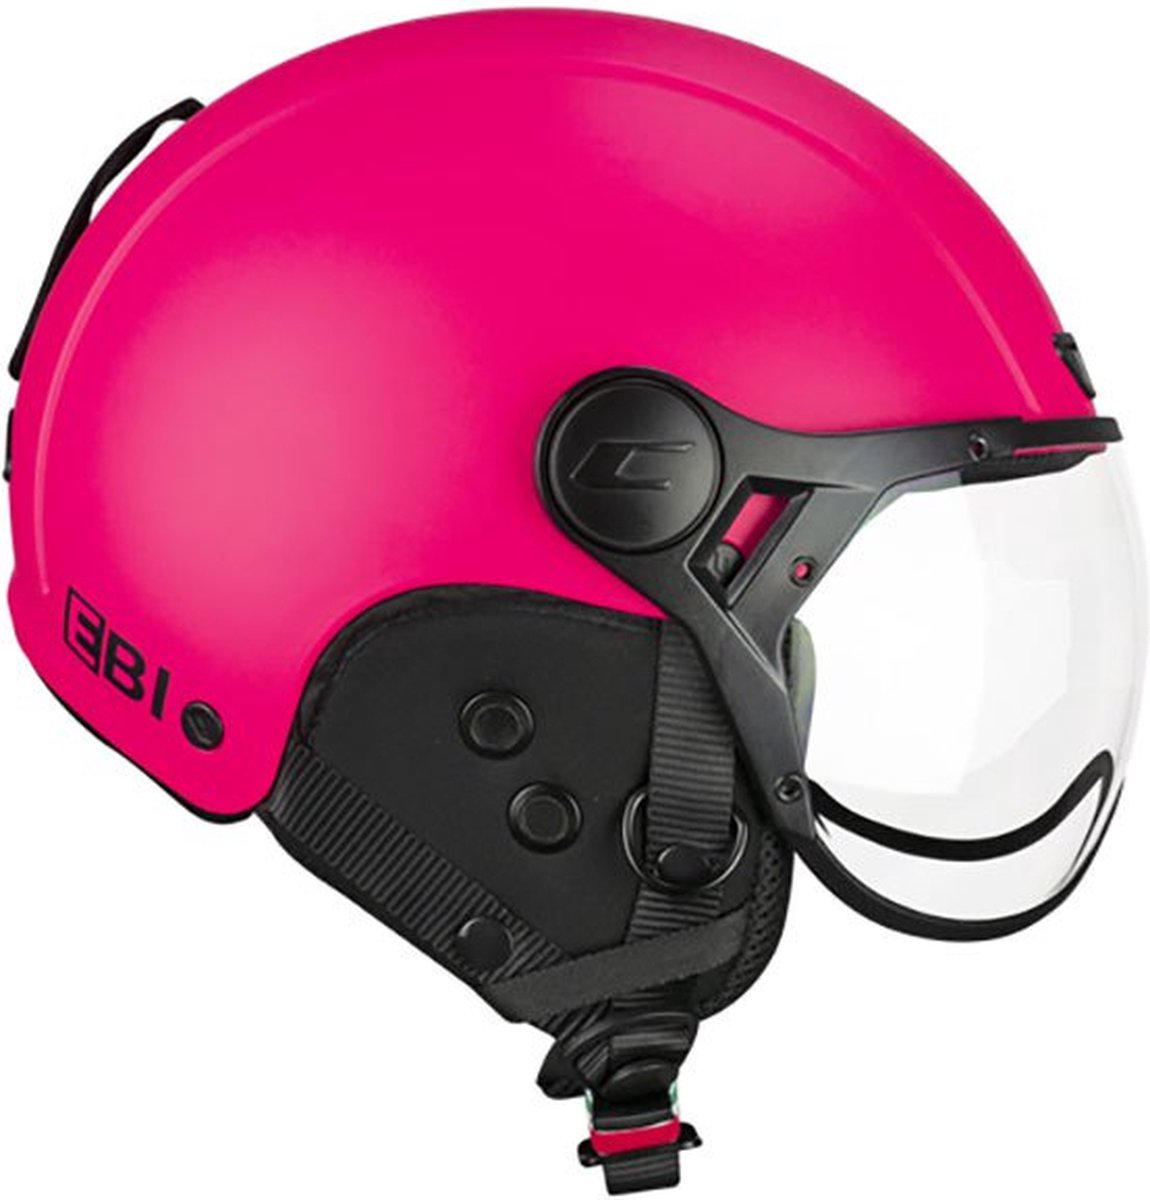 Cgm 801a Ebi Mono Helm Roze S